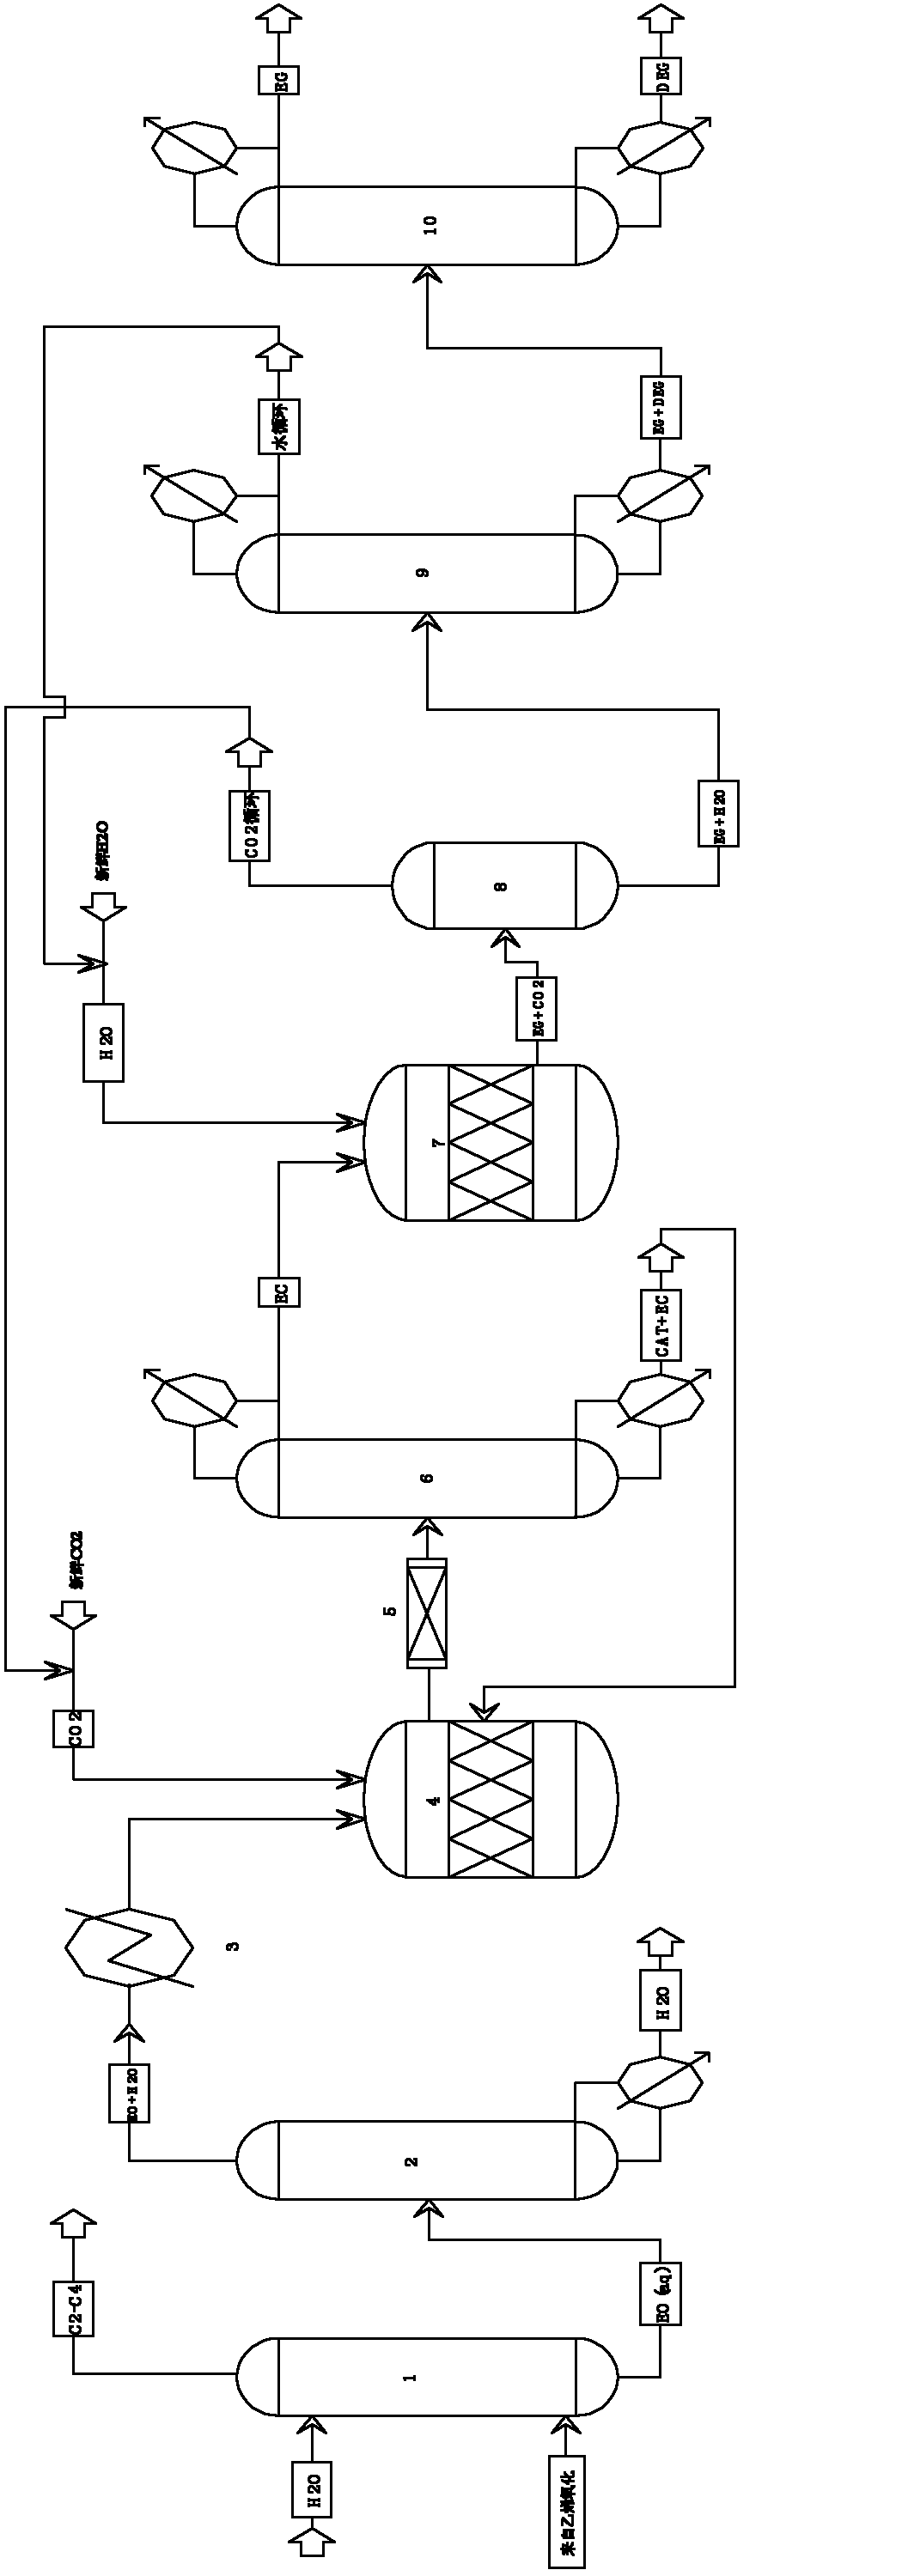 Method for preparing ethylene glycol by ethylene carbonate method